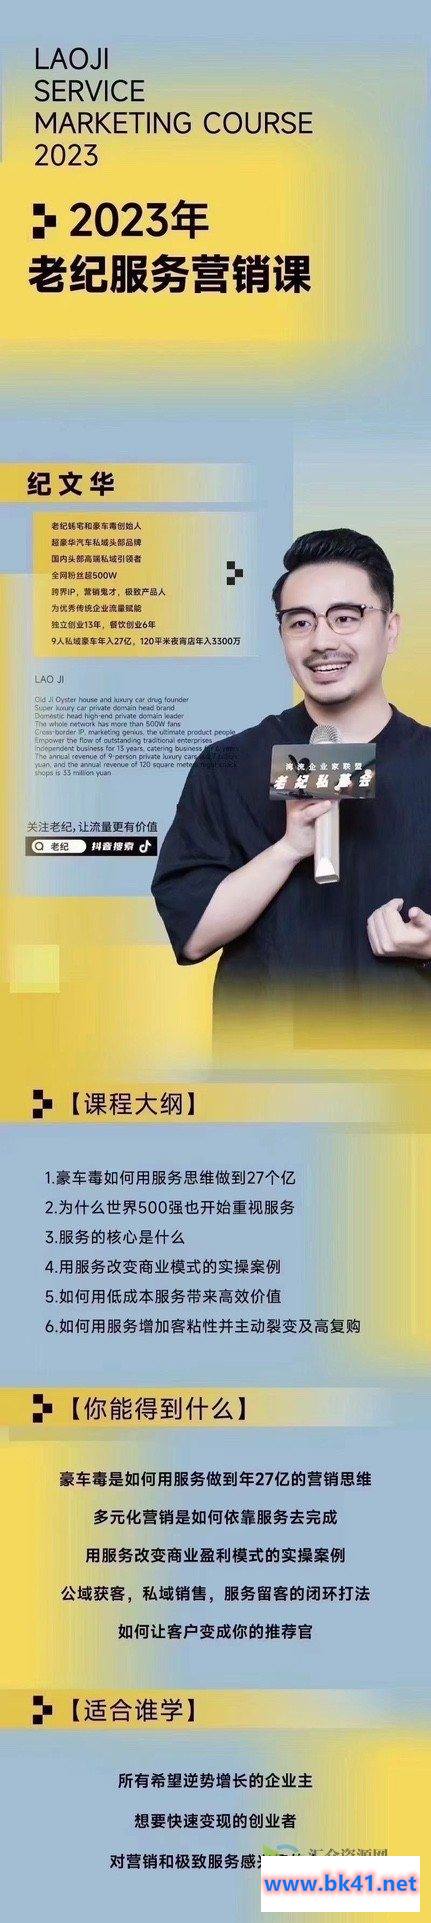 【老纪服务营销课】杭州第五届营销课，传统企业如何通过抖音短视频转型-不可思议资源网